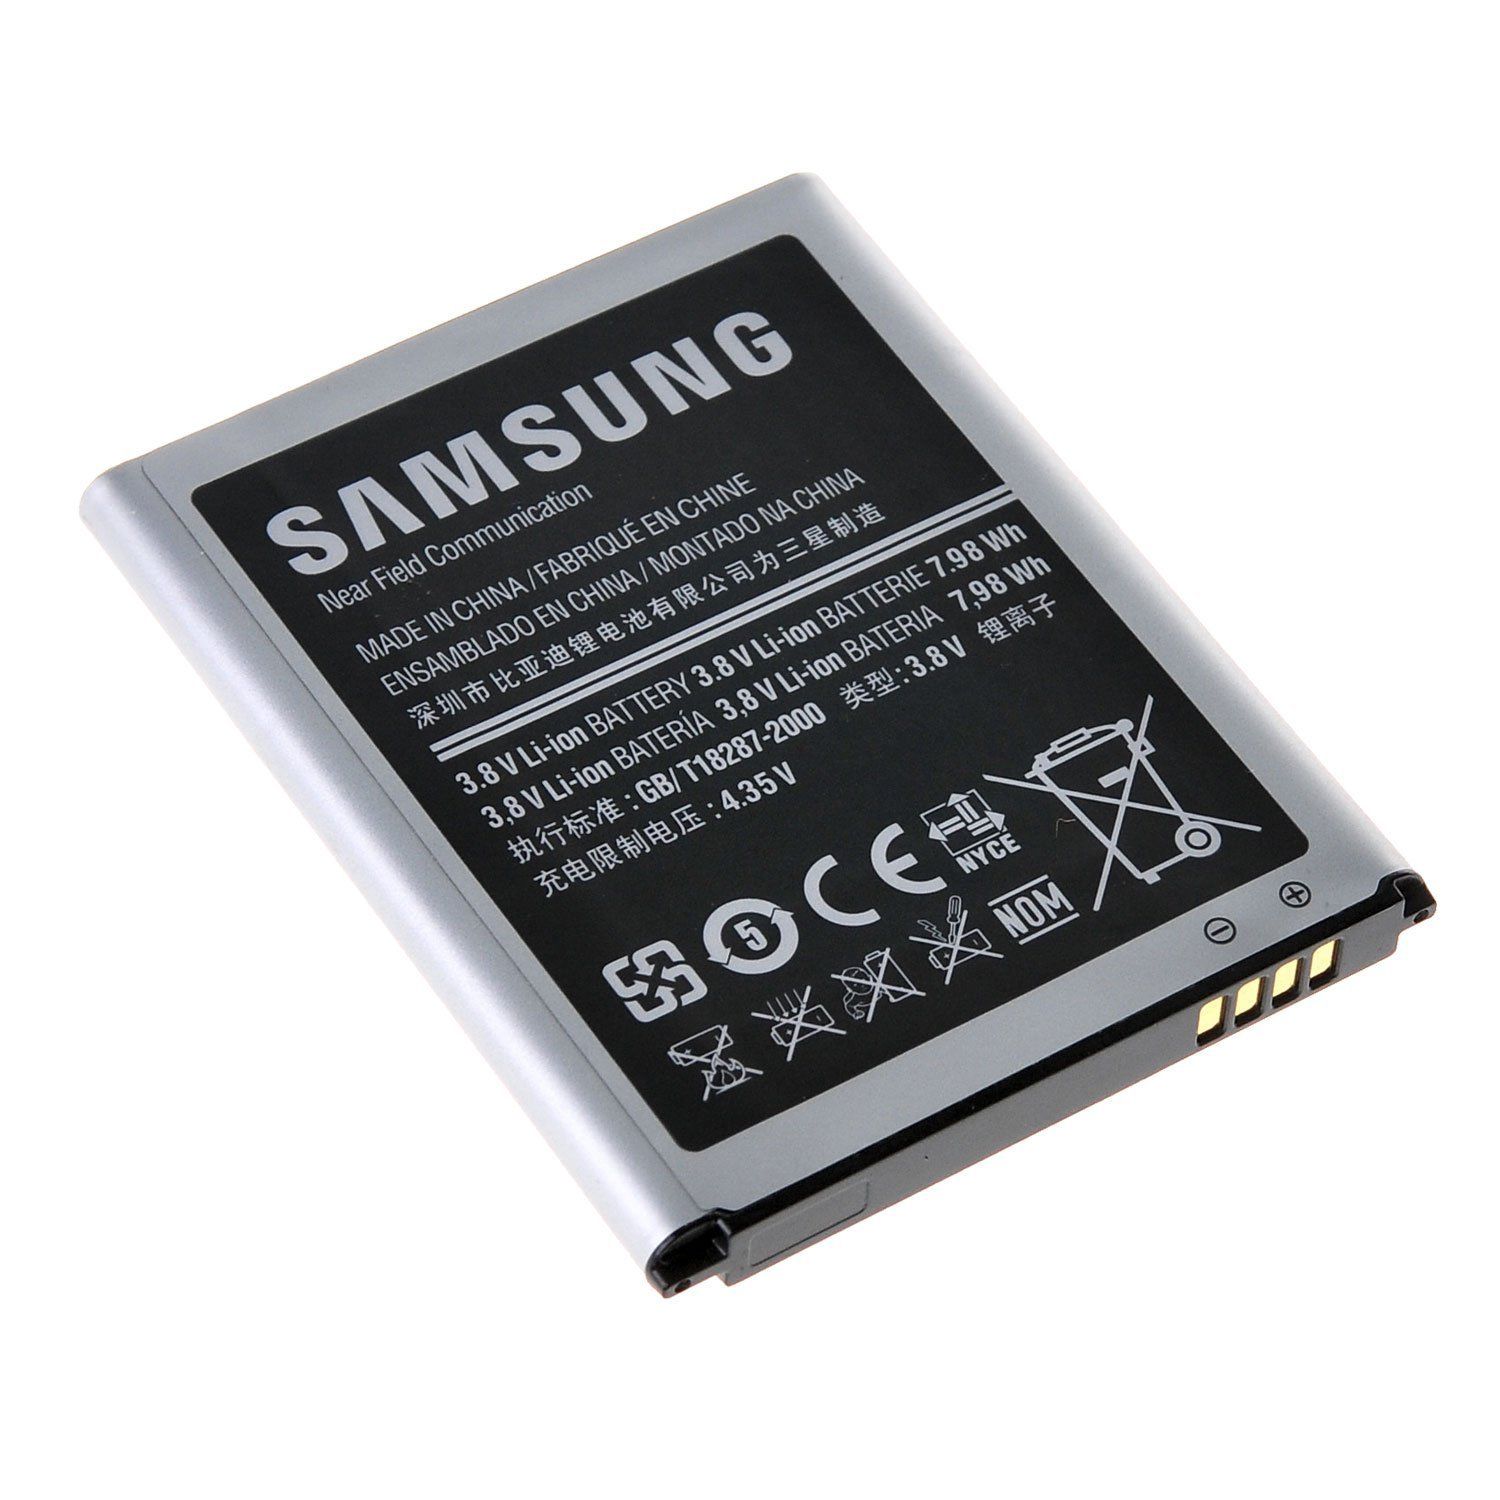 TradeNRGUK Official Genuine Original SAMSUNG Battery for Galaxy S3